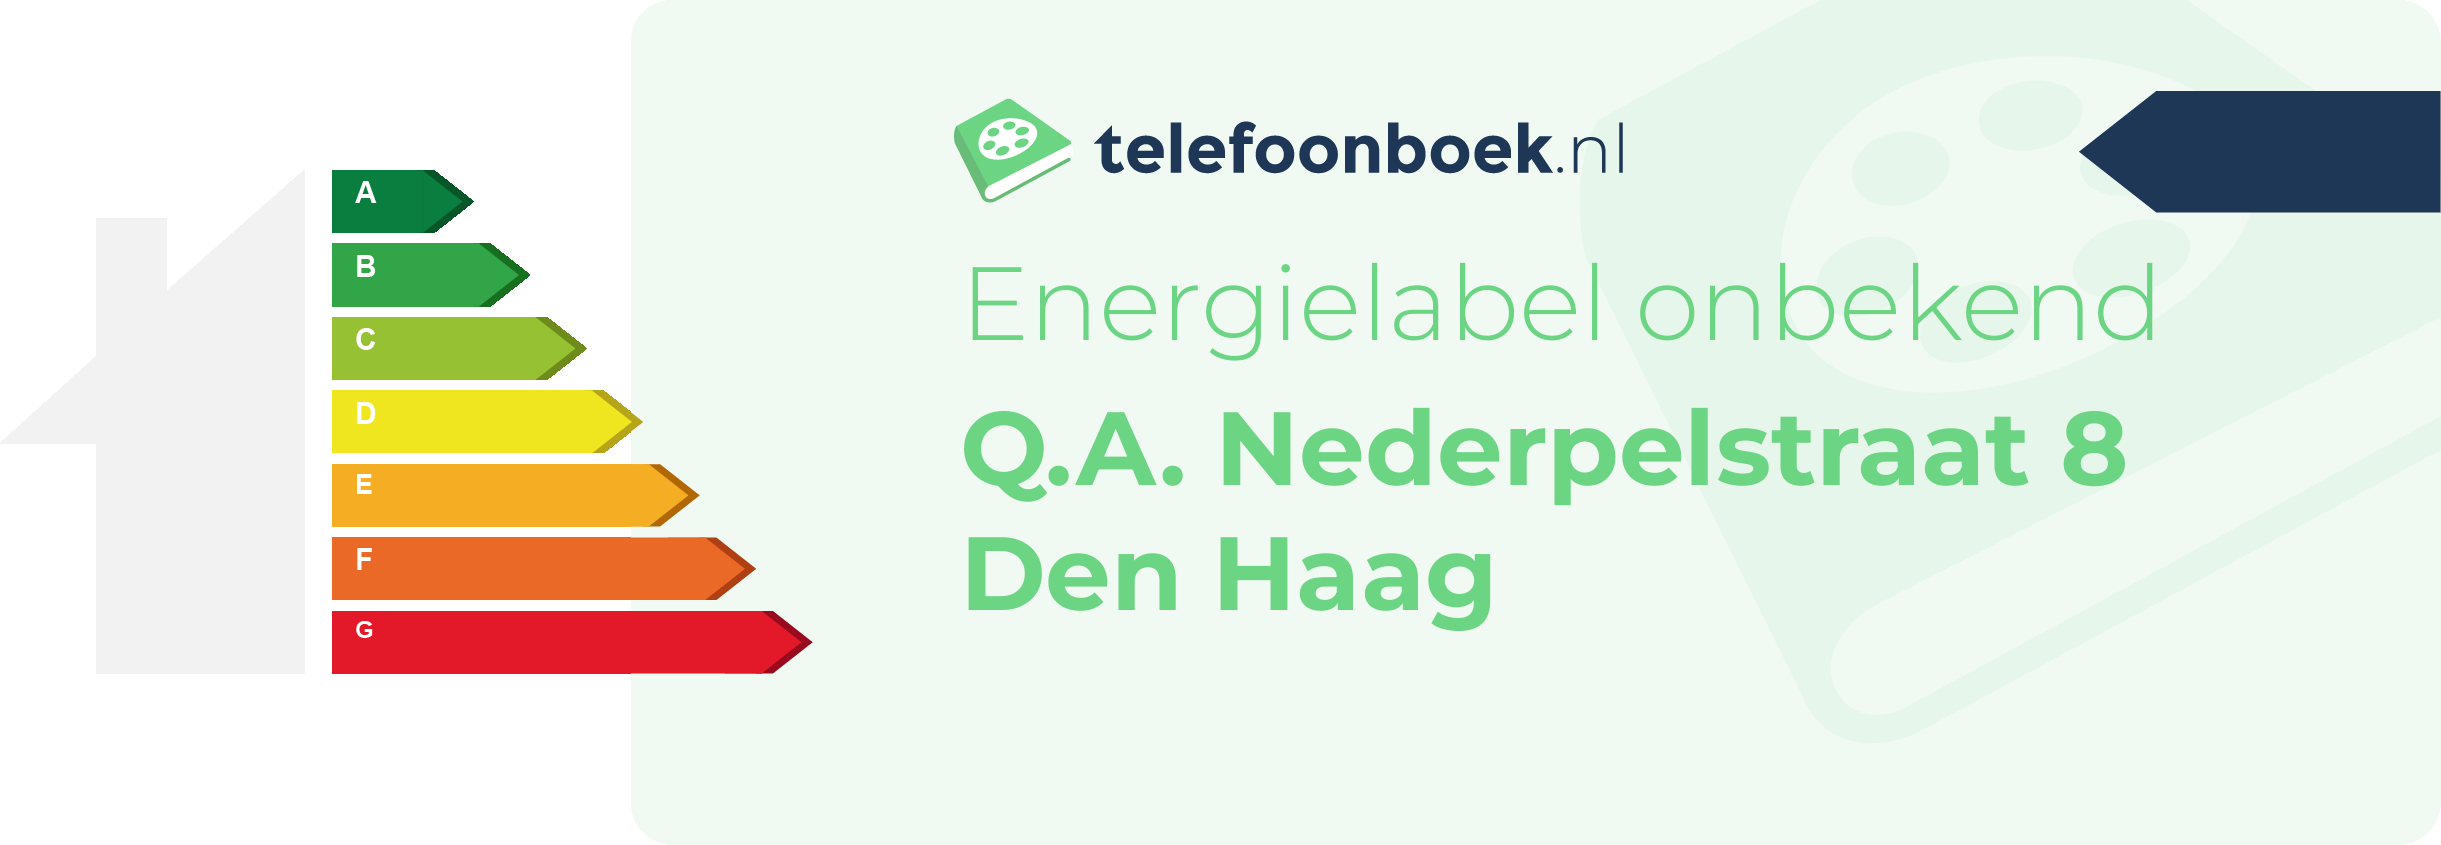 Energielabel Q.A. Nederpelstraat 8 Den Haag